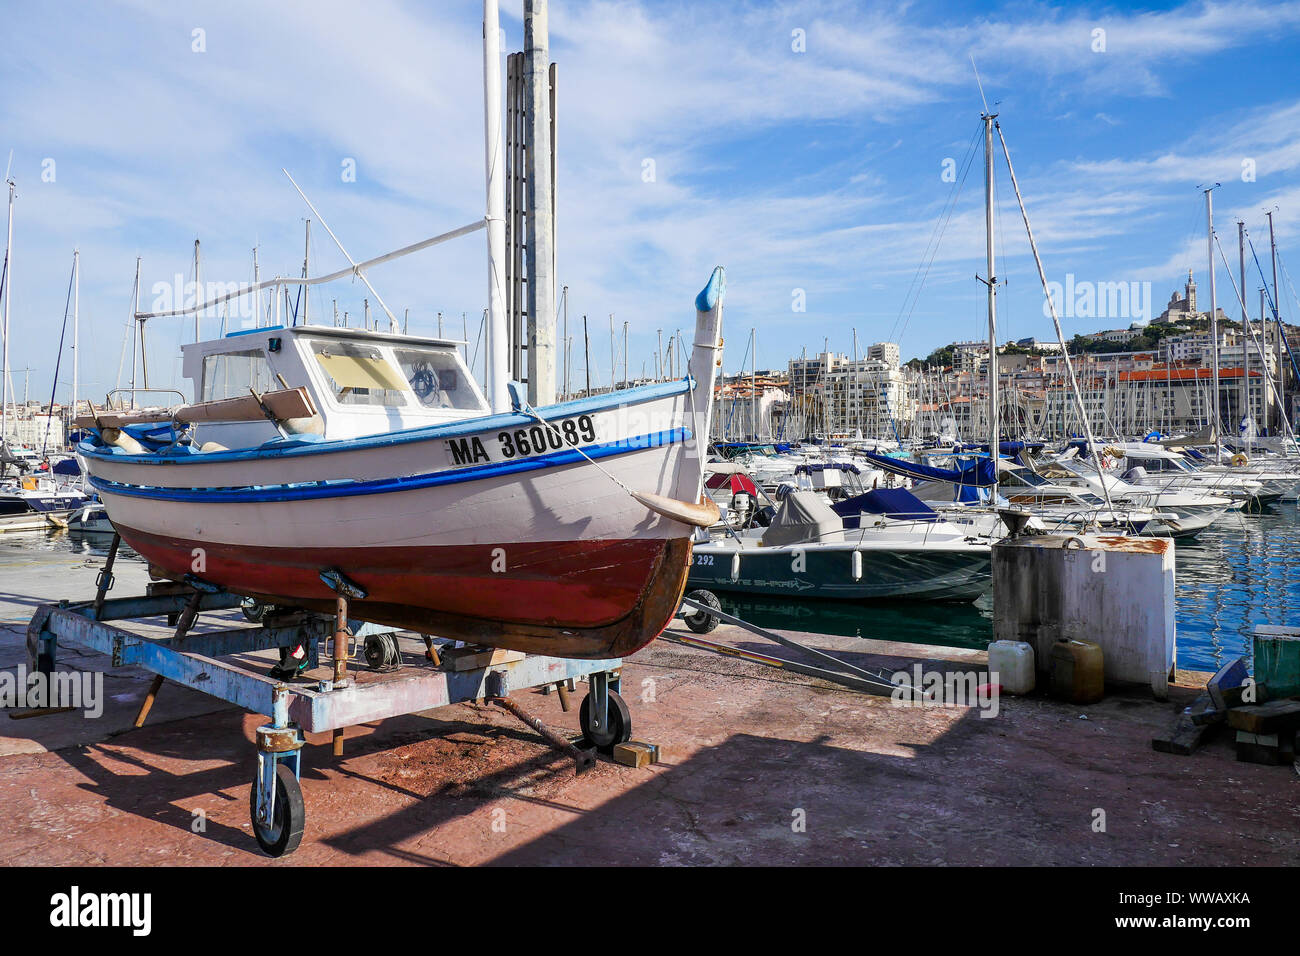 Fishermen boat undergoing repairs, Le Vieux Port, Marseille, Bouches-du-Rhône, PACA, France Stock Photo